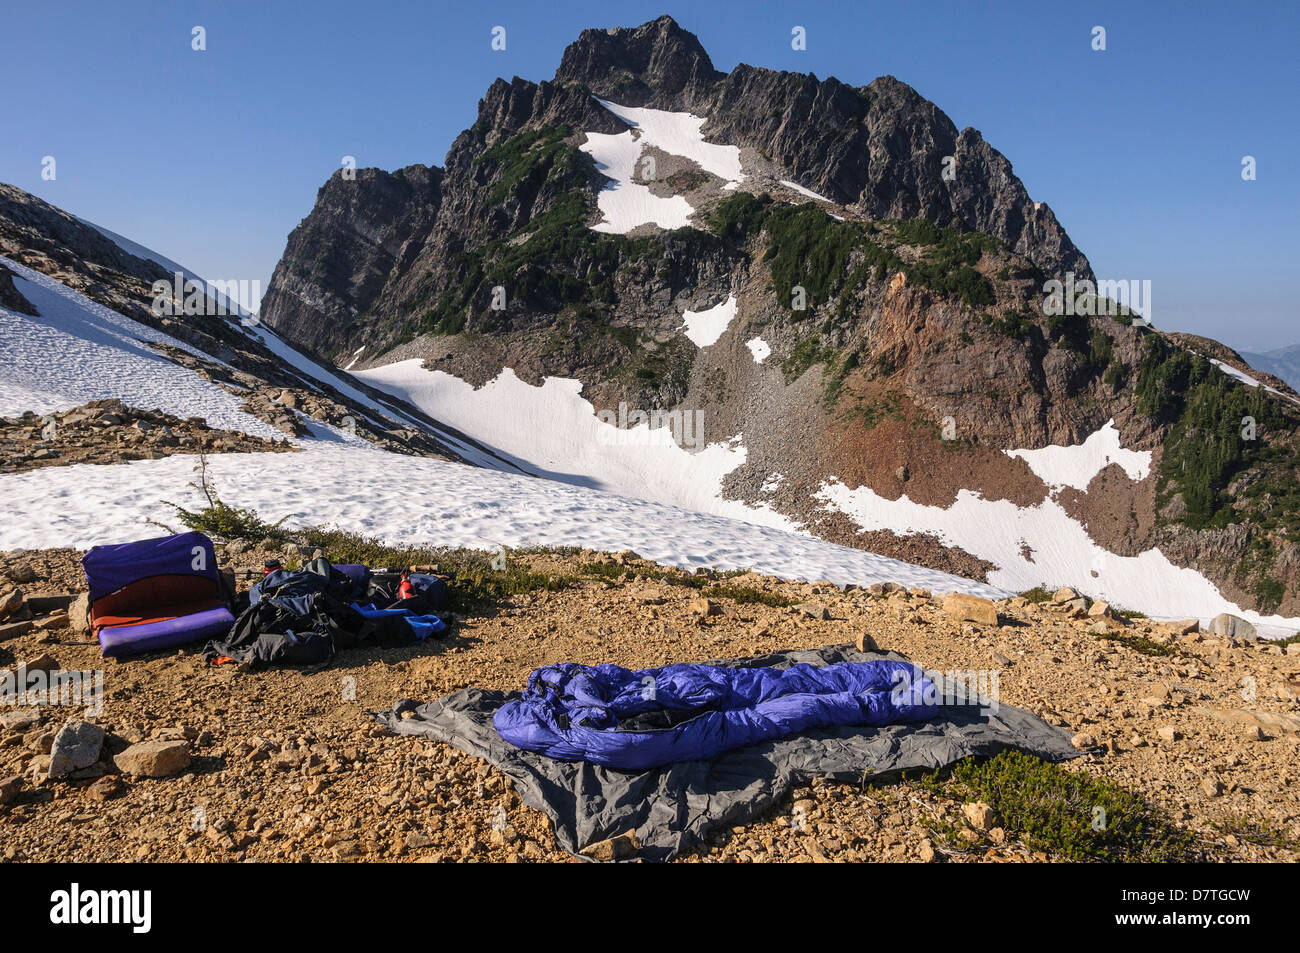 Washington, des cascades, le mont Baker-Snoqualmie National Forest. Camping del Campo pic dans l'arrière-plan. Banque D'Images